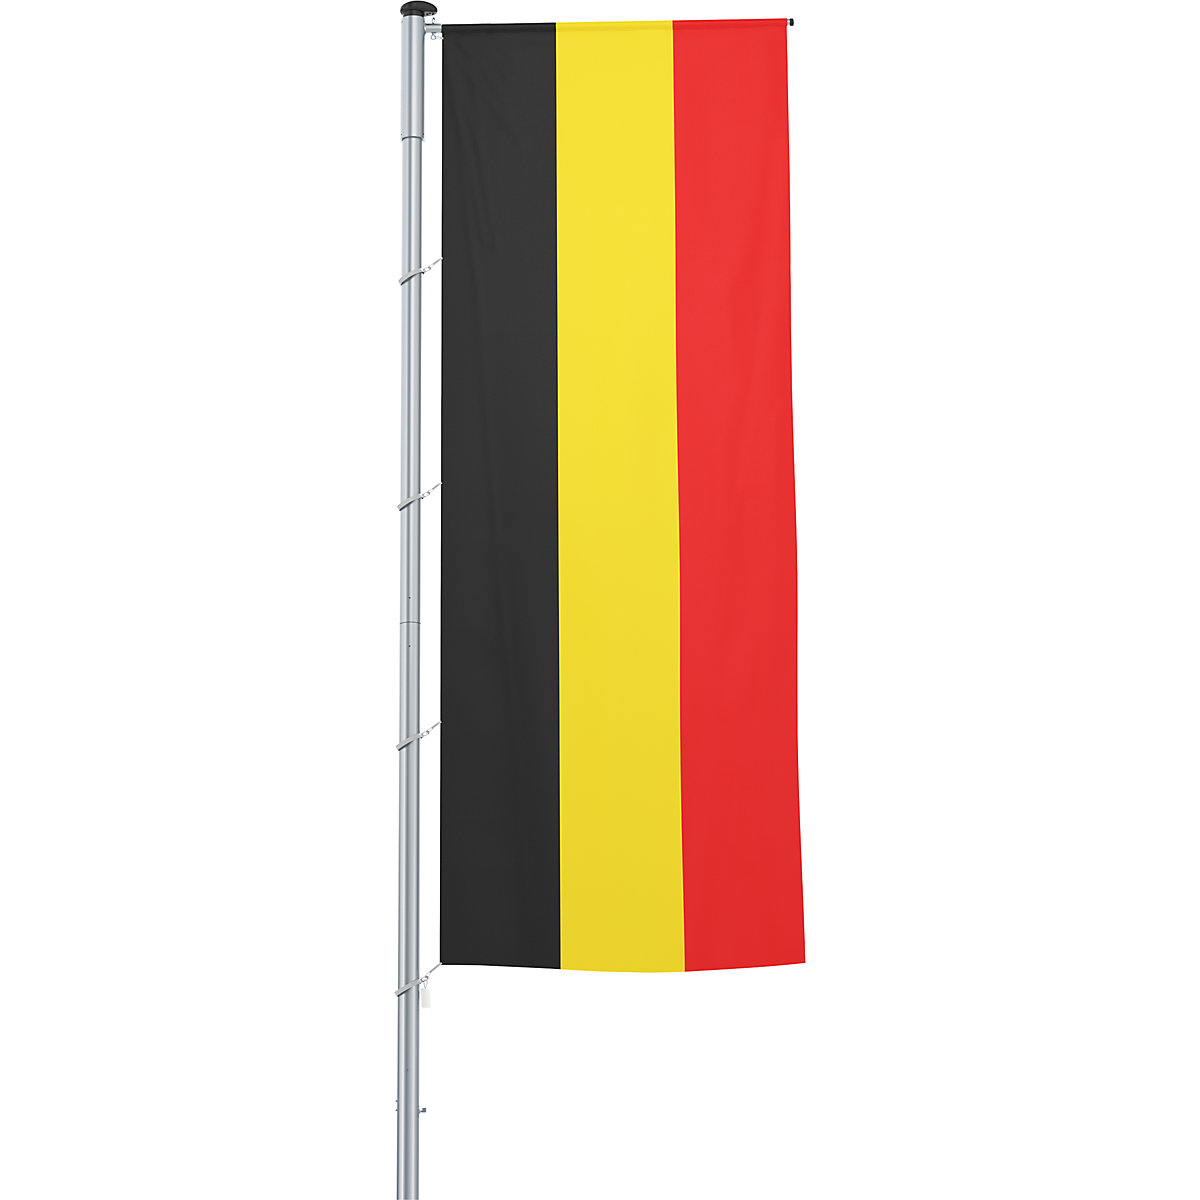 Vlajka na pozdĺžne upevnenie na stožiar/národná vlajka – Mannus, formát 1,2 x 3 m, Belgicko-21